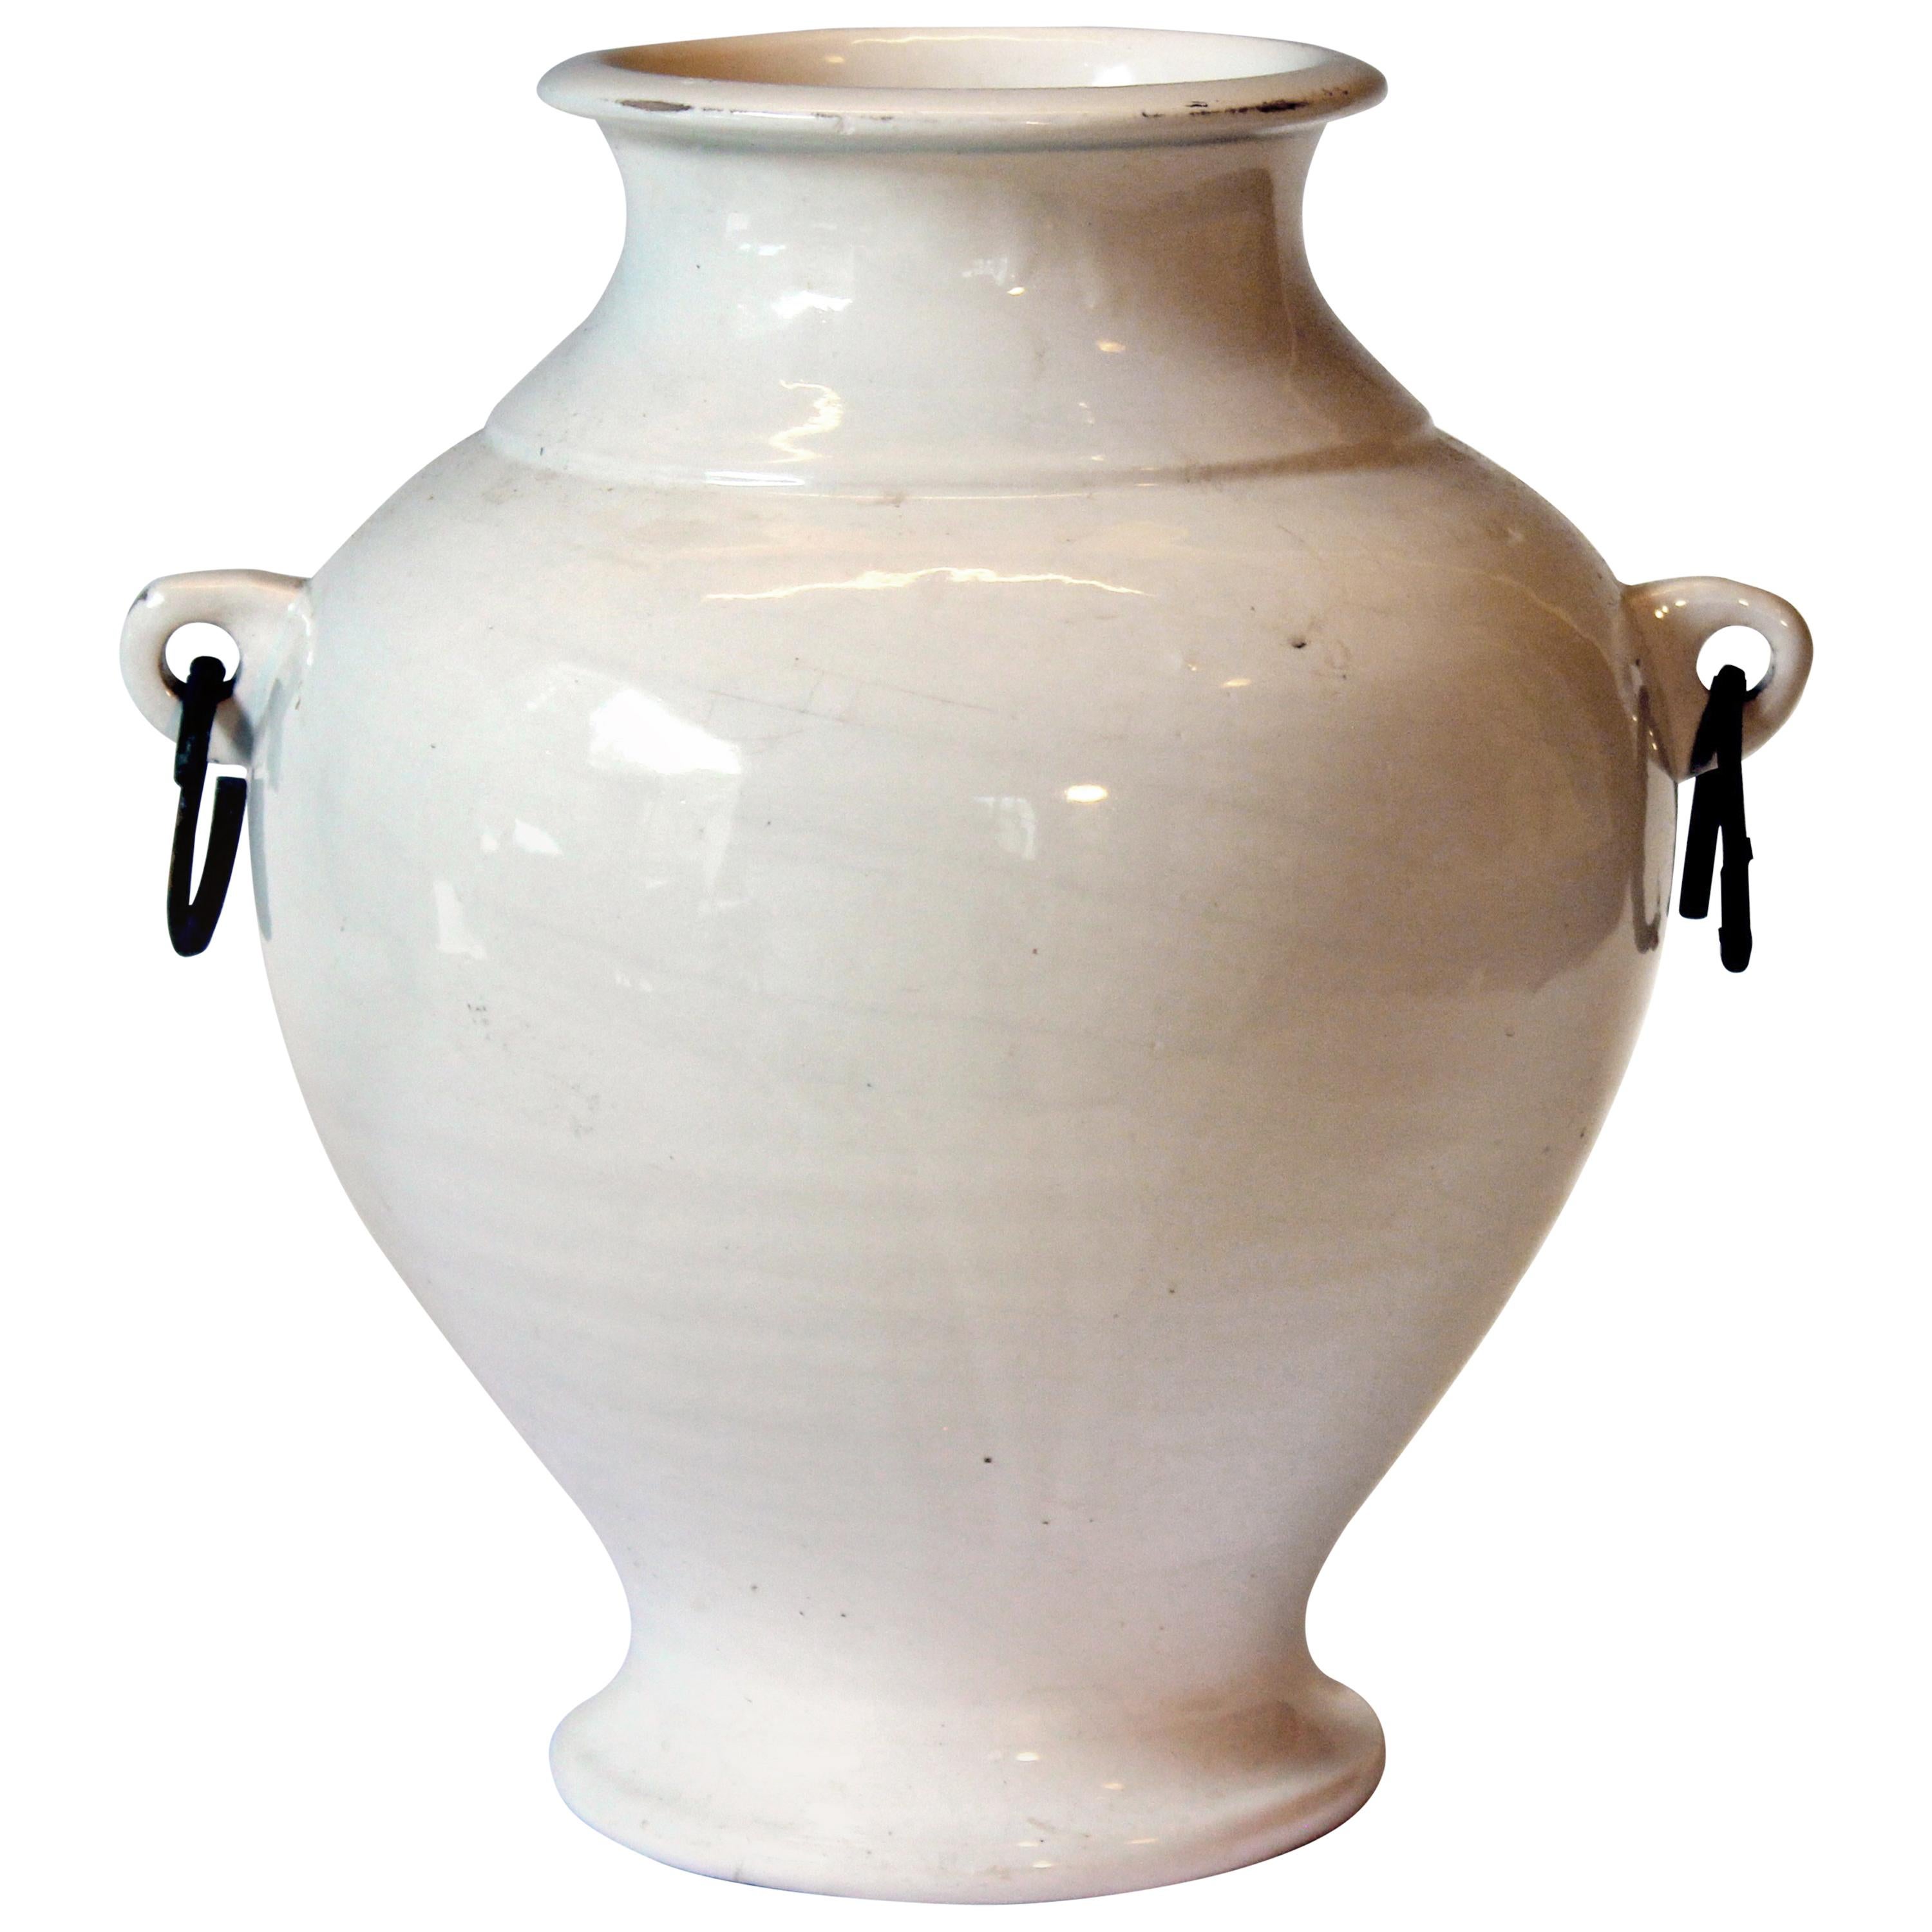 Large Vintage Hand Turned Italian Faience Majolica Art Pottery Studio Vase